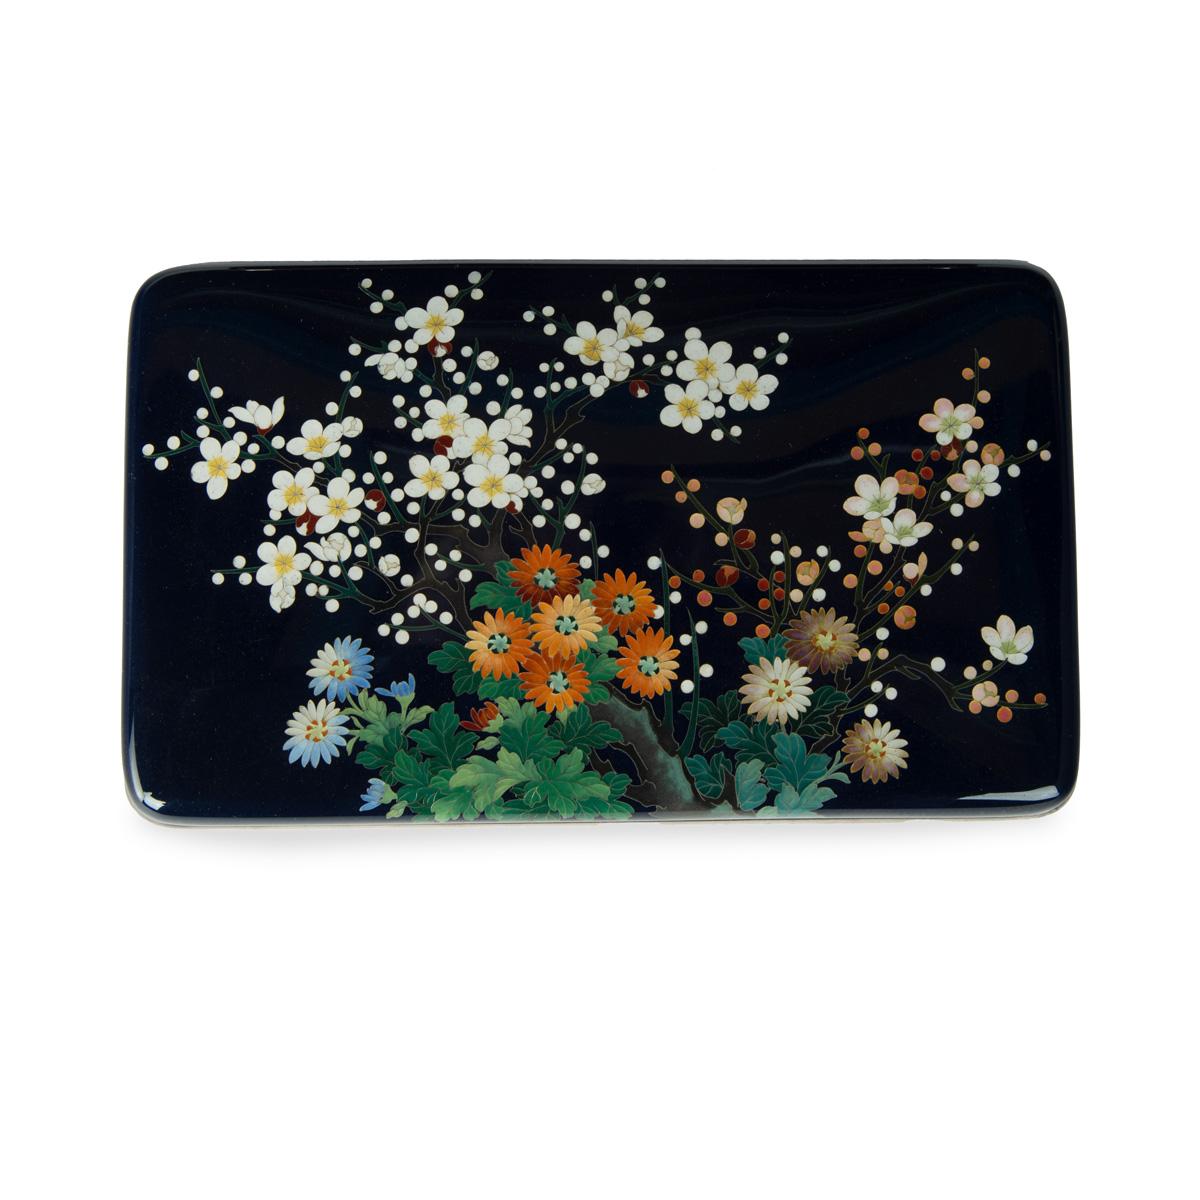 Cloisonné-Dose und Deckel der Firma Ando aus der Meiji-Periode, mit Silberdraht und farbigen Emaillen gearbeitet, mit einer Reihe bunter Blumen, die sich auf einem satten nachtblauen Grund abheben, mit silbernen Rändern und einem Seidenfutter,